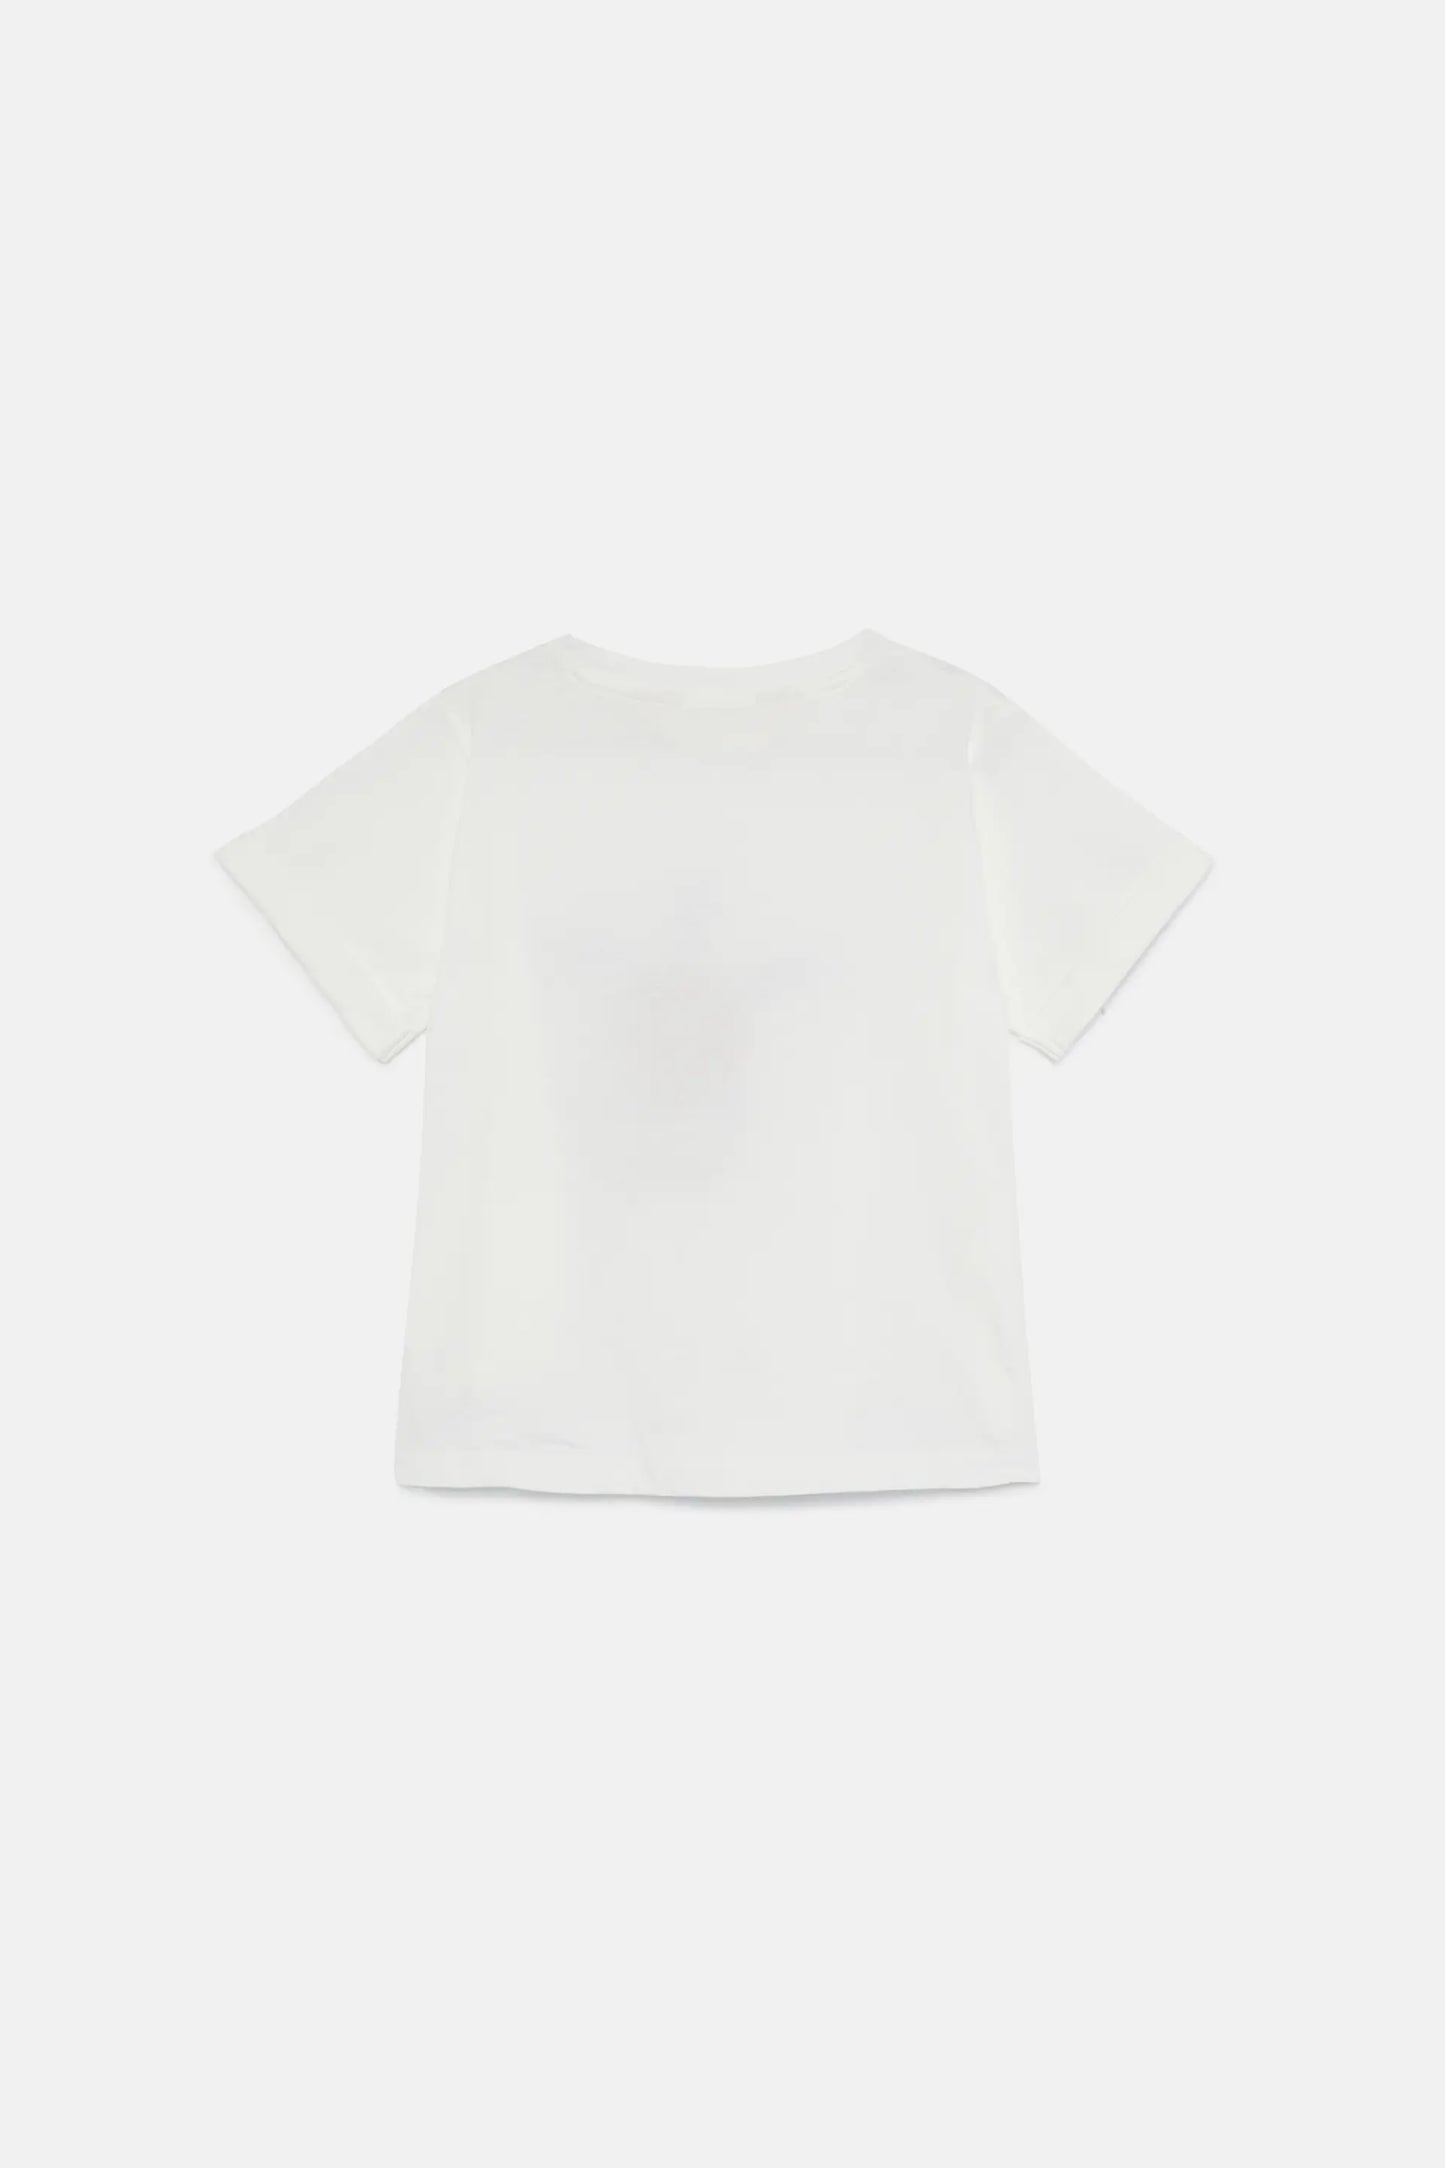 Camiseta unisex print tortuga blanca